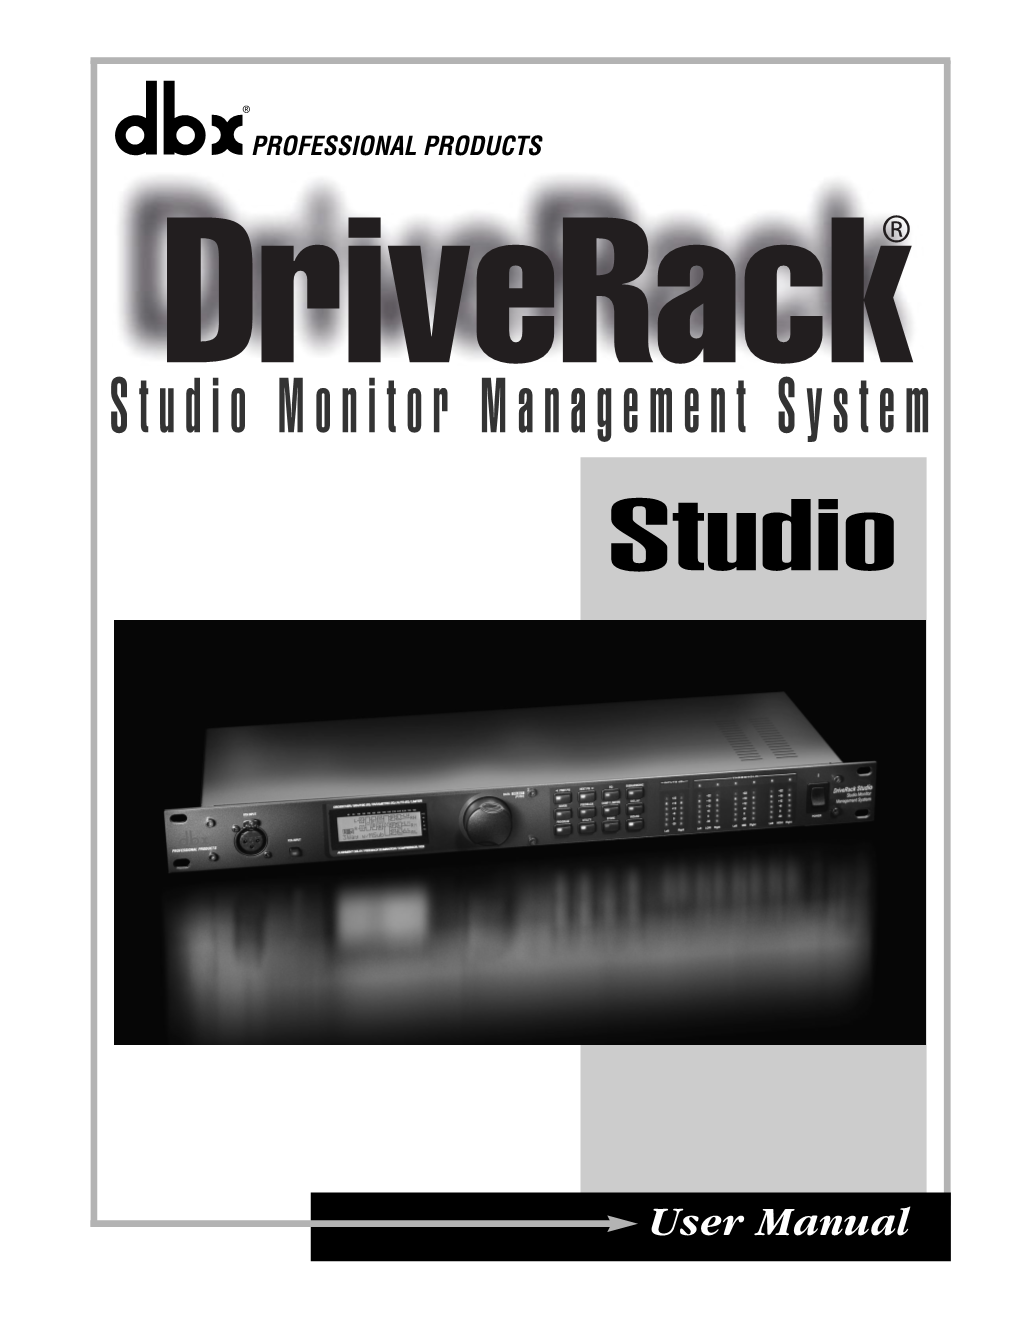 Studio Driverack Manual 6/18/03